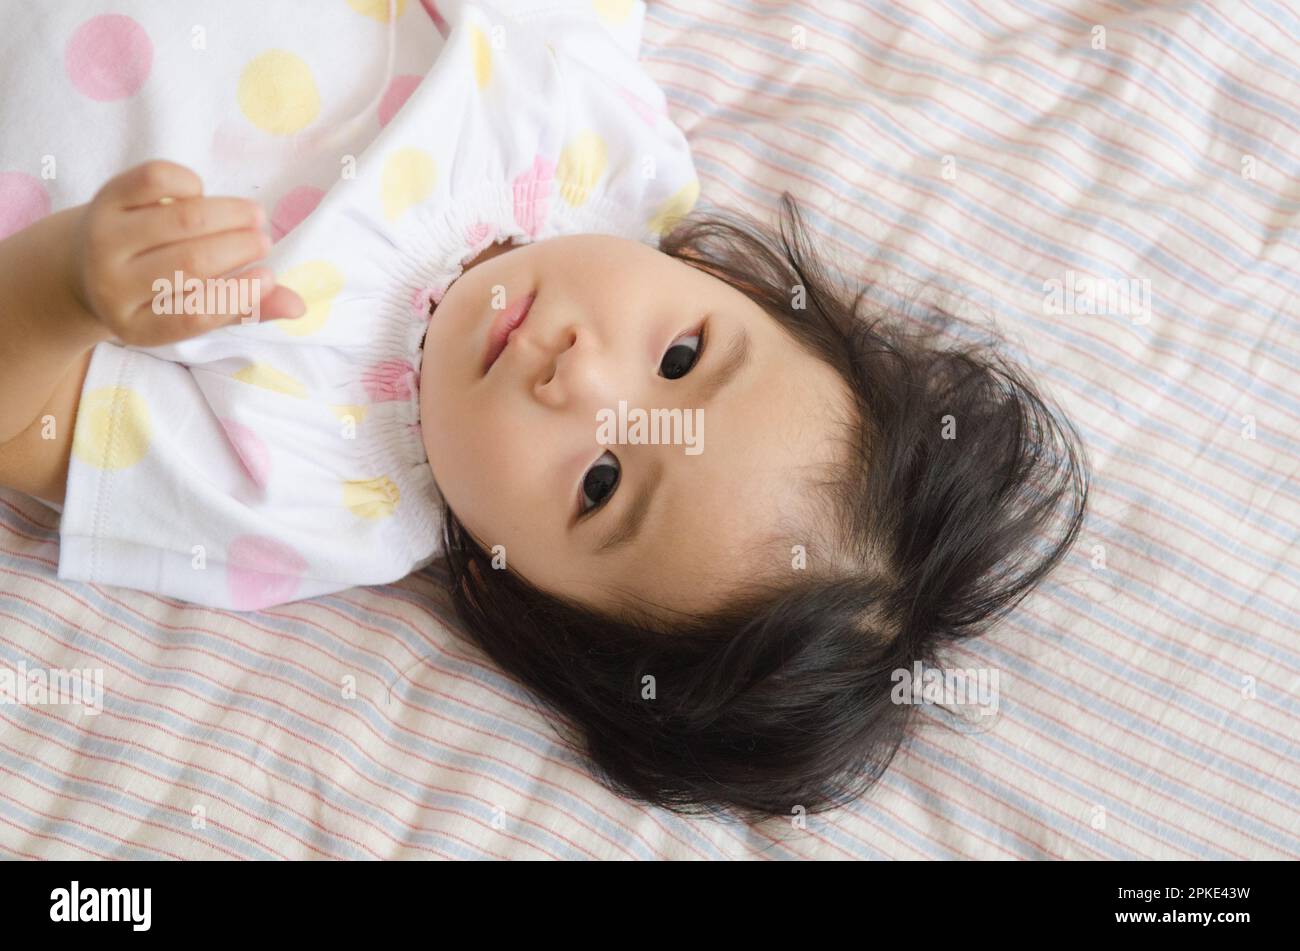 Girl lying on bed Stock Photo